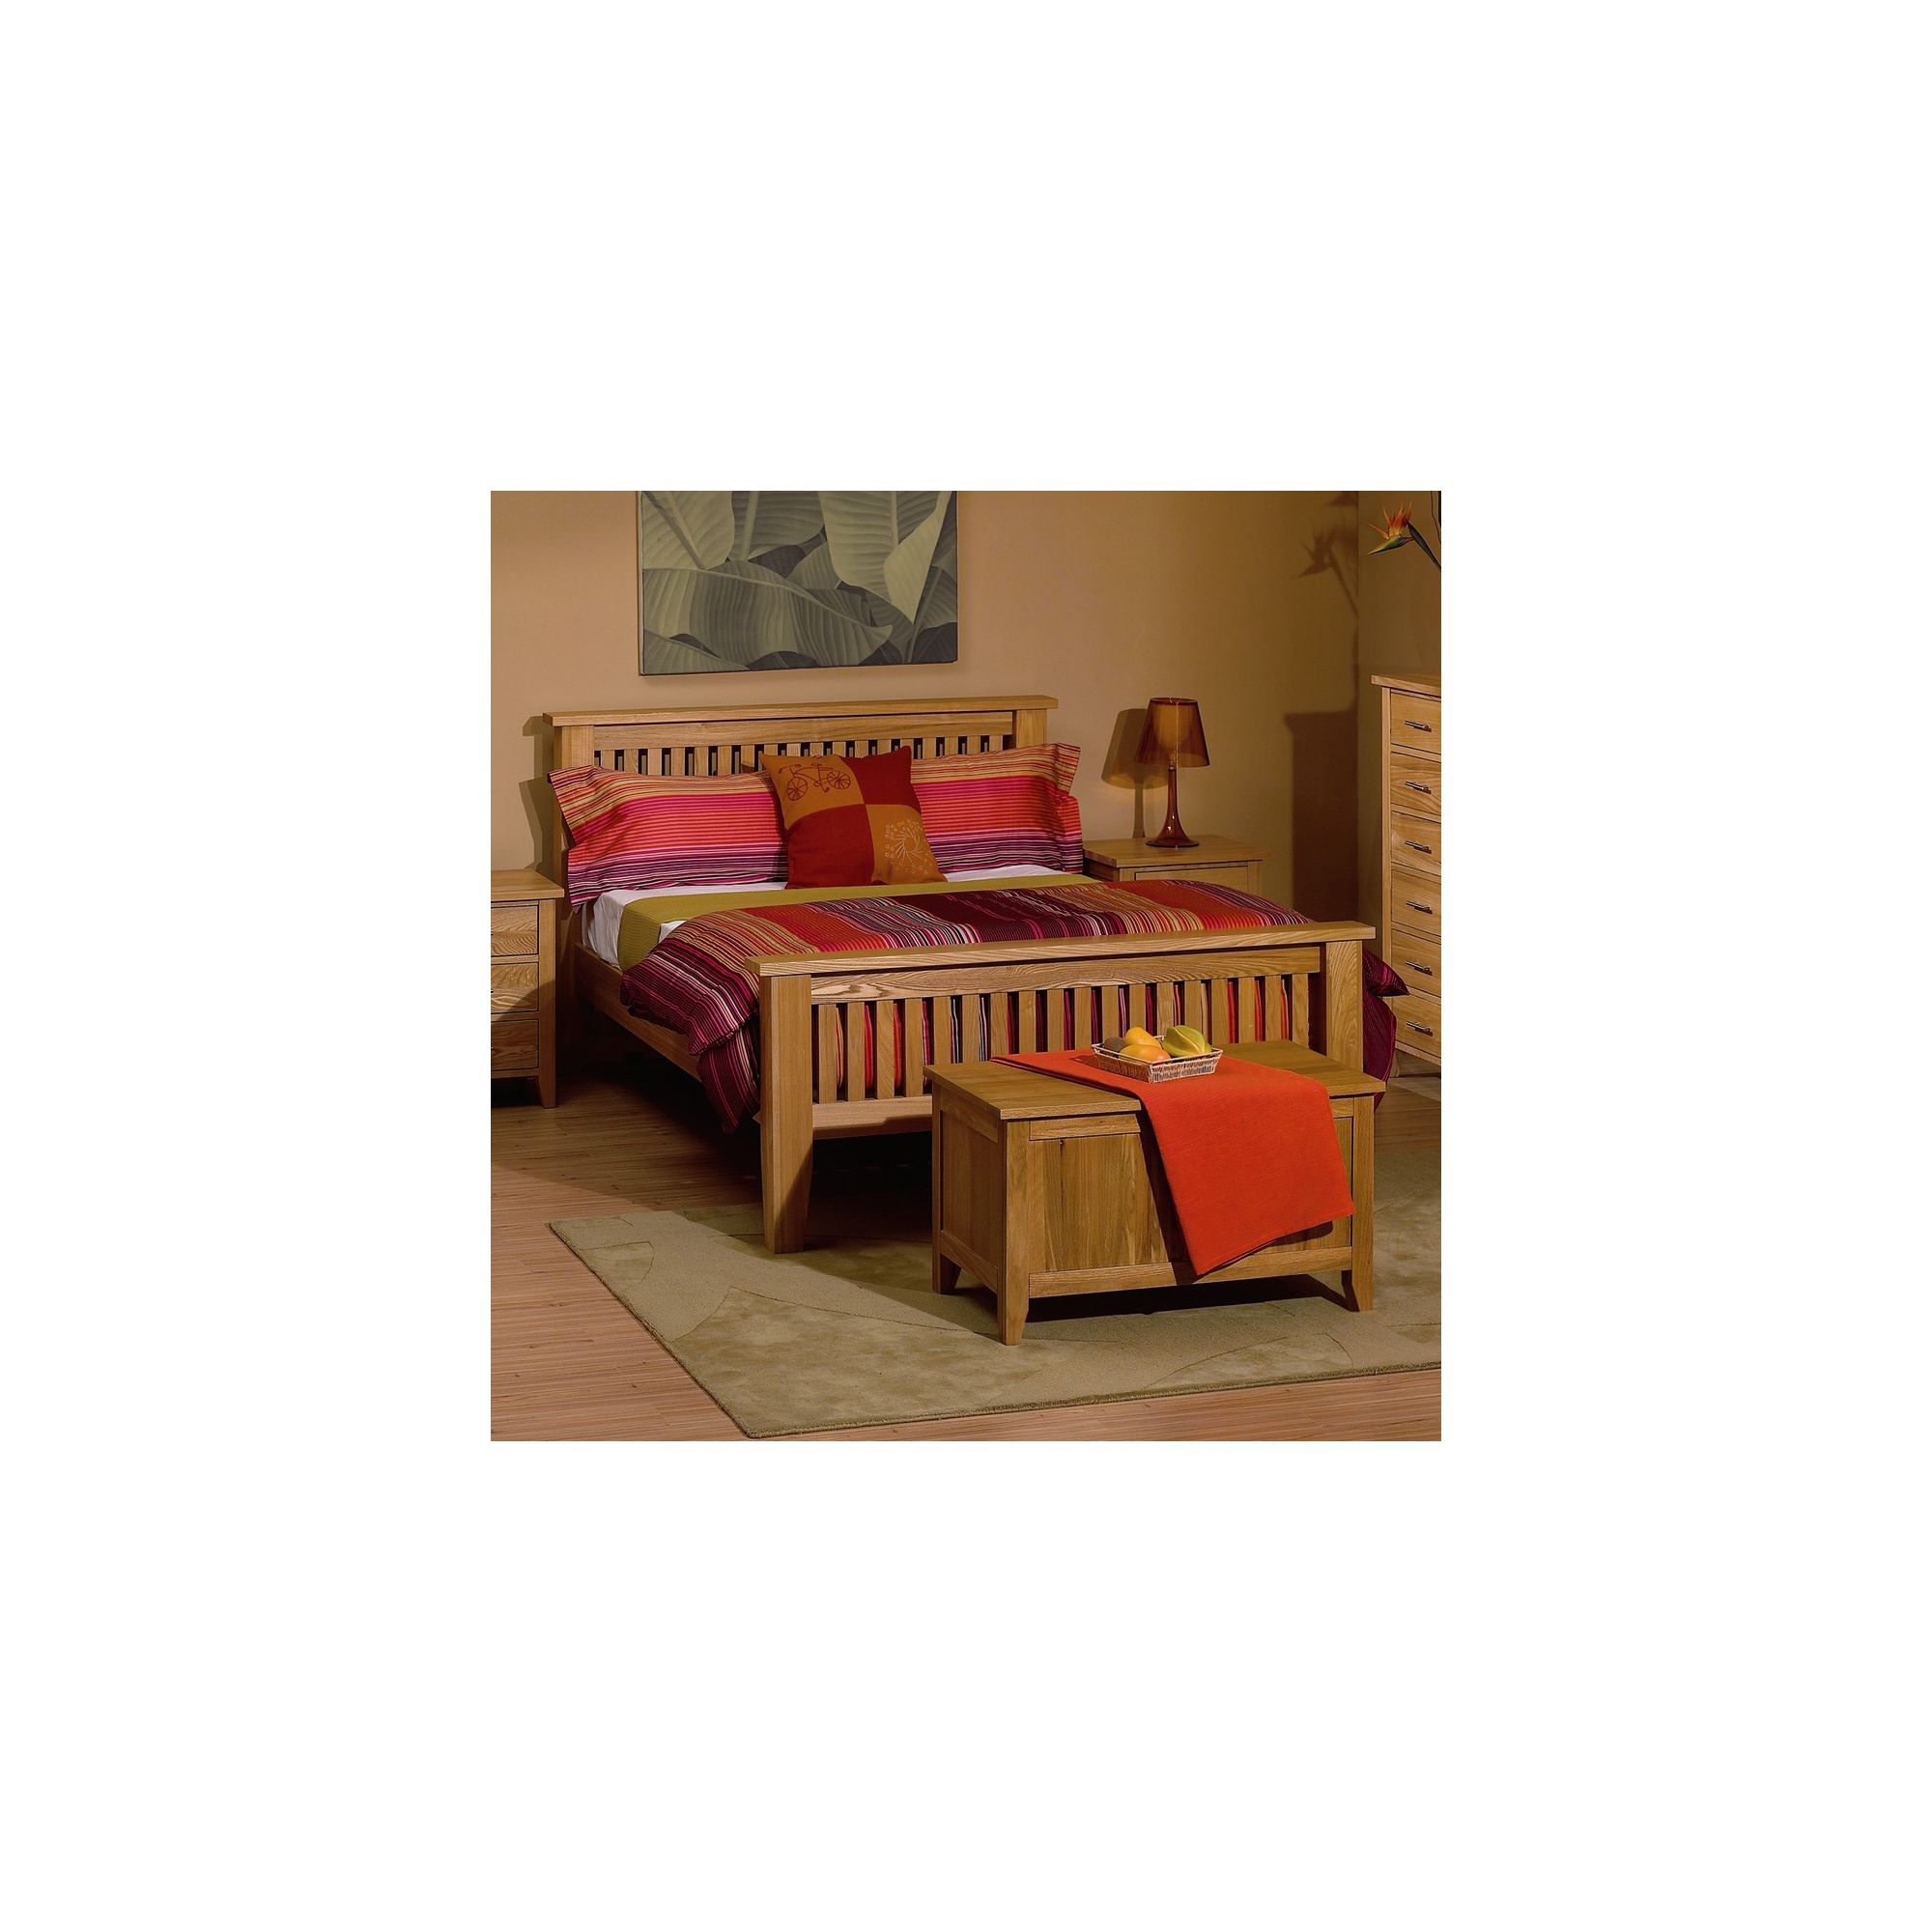 Kelburn Furniture Carlton High Foot End Bed Frame - Single at Tesco Direct